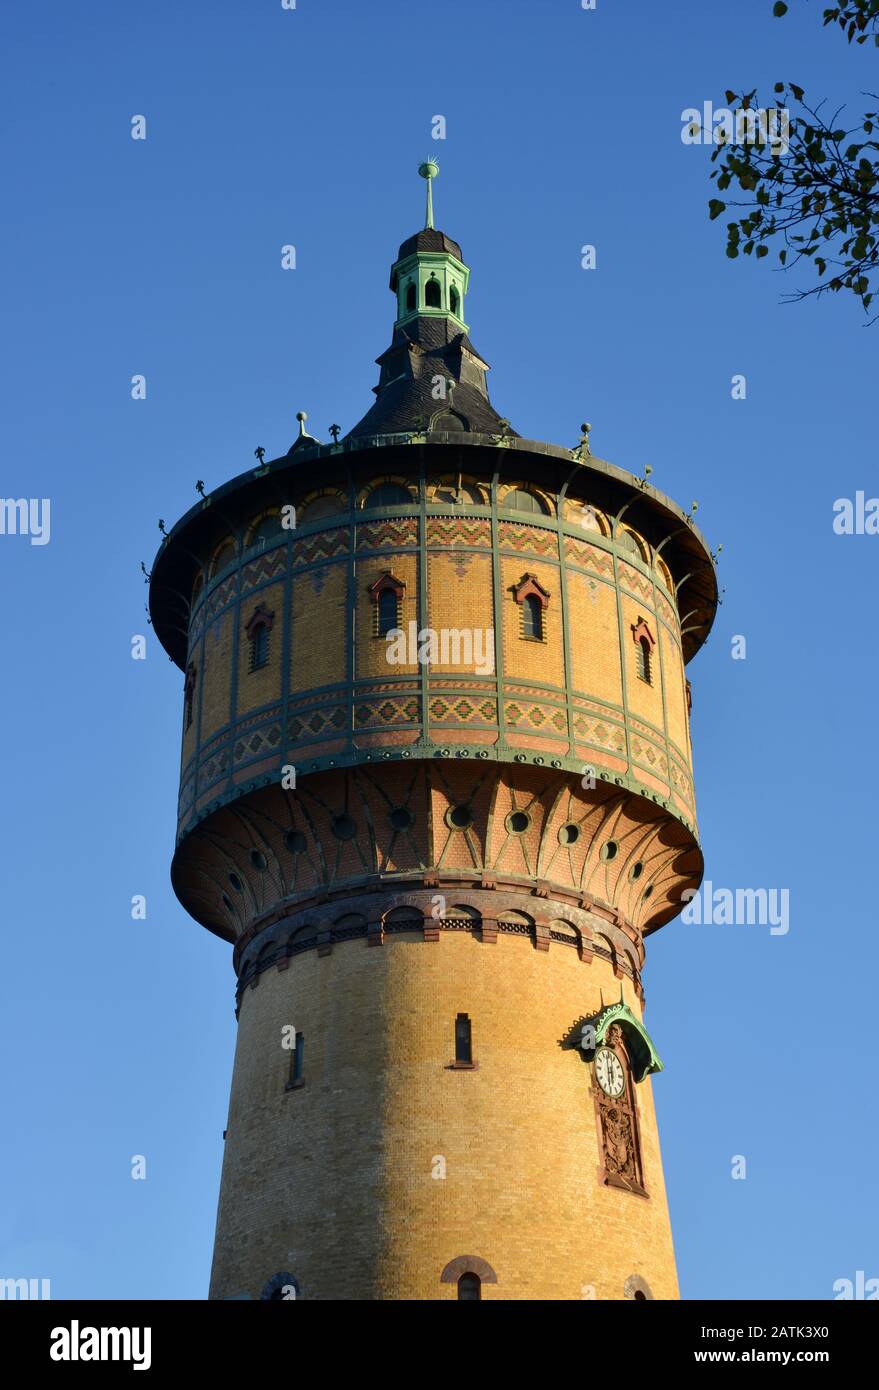 Storico Watertower nella città di Halle / Saale, Germania Foto Stock